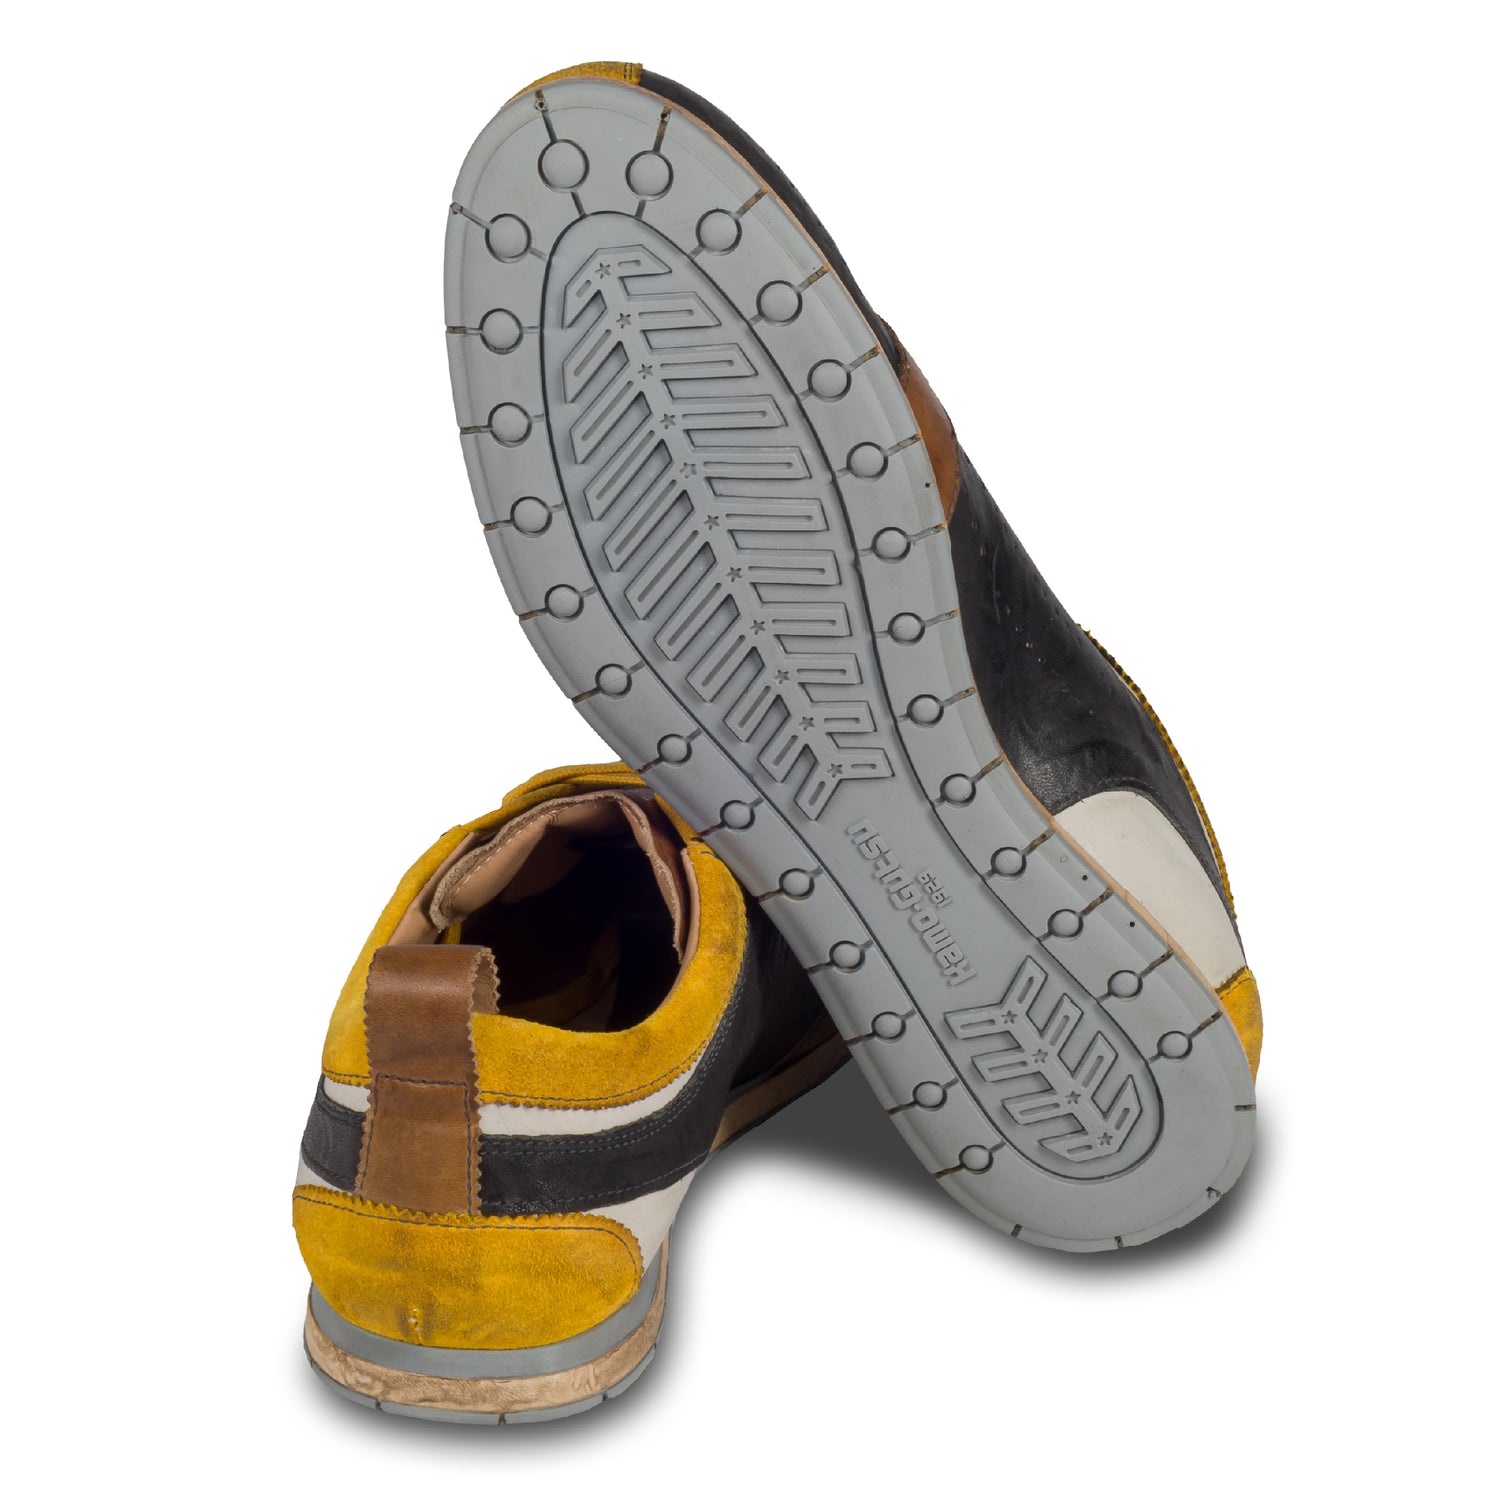 KAMO-GUTSU Italienischer Herren Leder Sneaker, dunkelgrau gelb, Retro-Optik, Modell TIFO-017 lambo antracite. Handgefertigt. Ansicht der Ferse und Sohlenunterseite.